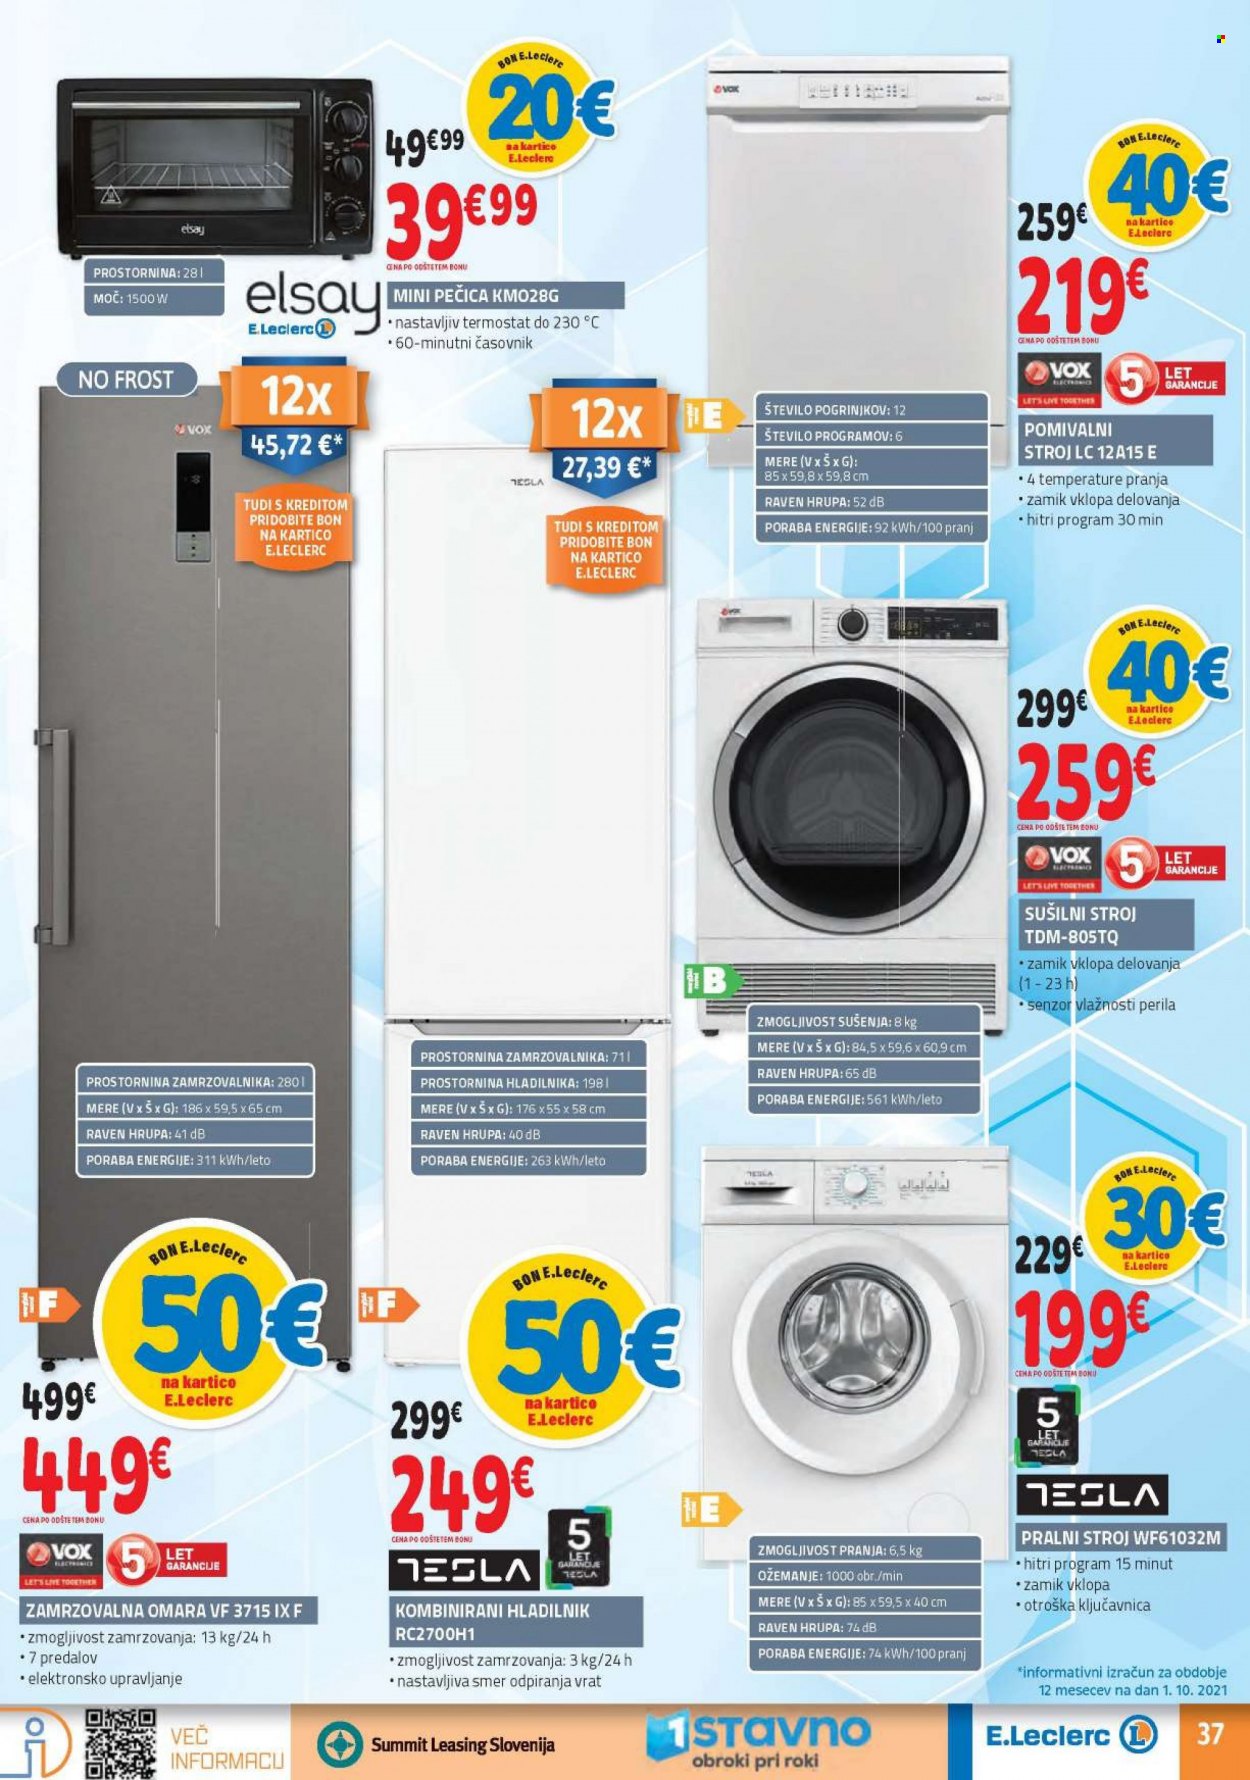 thumbnail - E.Leclerc katalog - 13.10.2021 - 23.10.2021 - Ponudba izdelkov - zamrzovalna omara, hladilnik, pralni stroj. Stran 37.